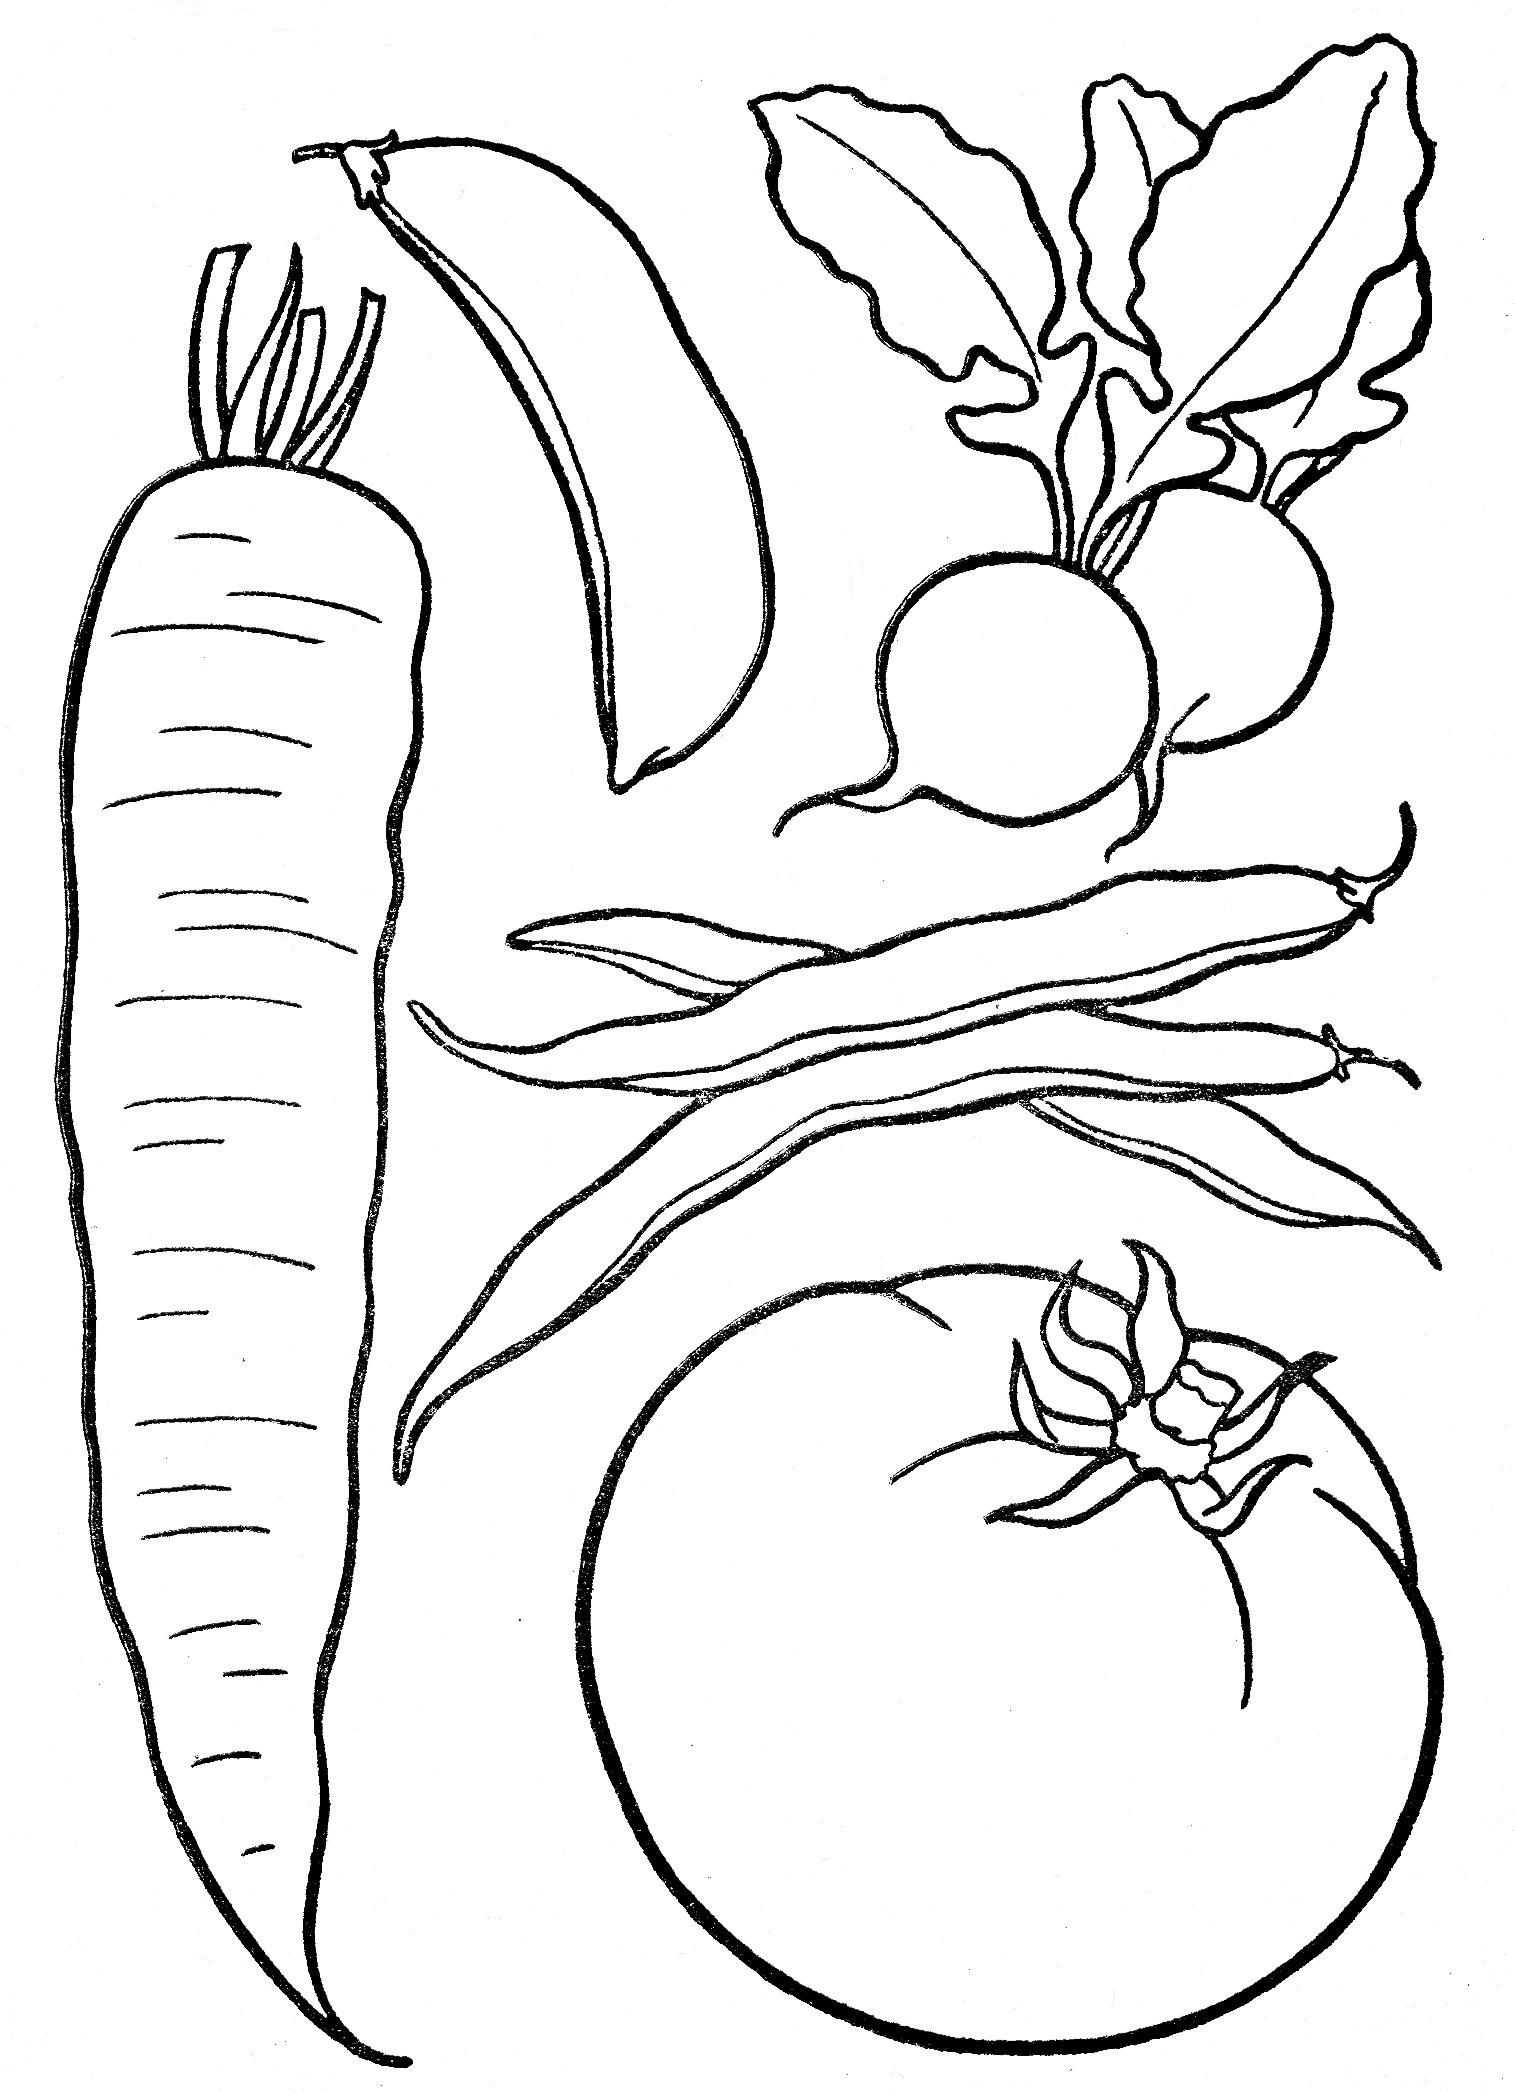 Рисунки фруктов и овощей для детей для раскрашивания, срисовки цветные карандашом, красками